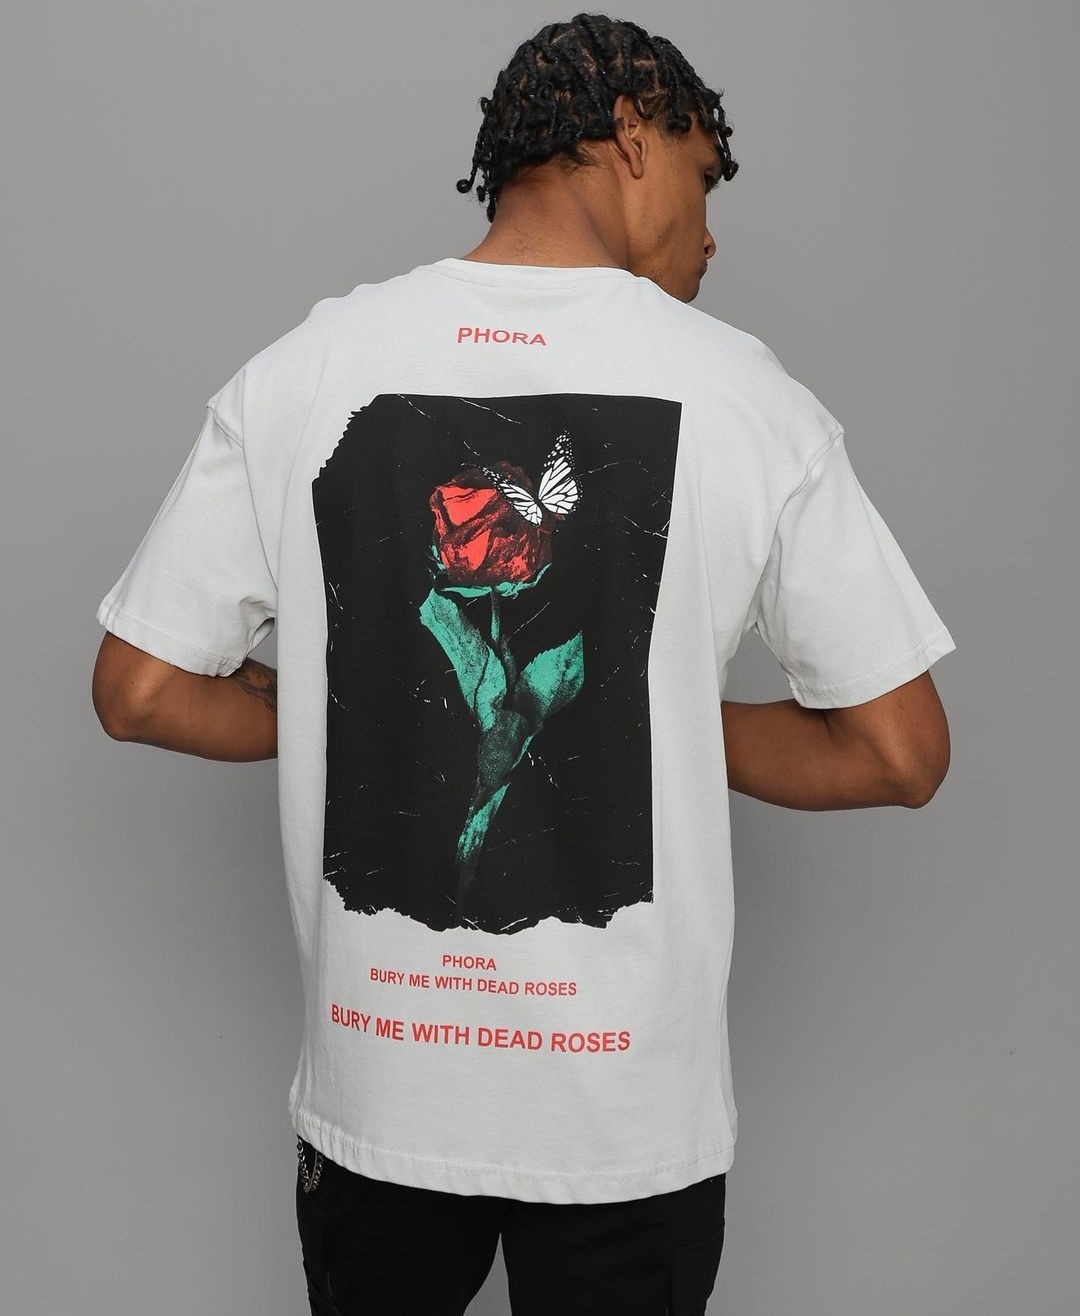 Ασπρη μπλουζα με τυπωμα Phora-Bury with dead roses